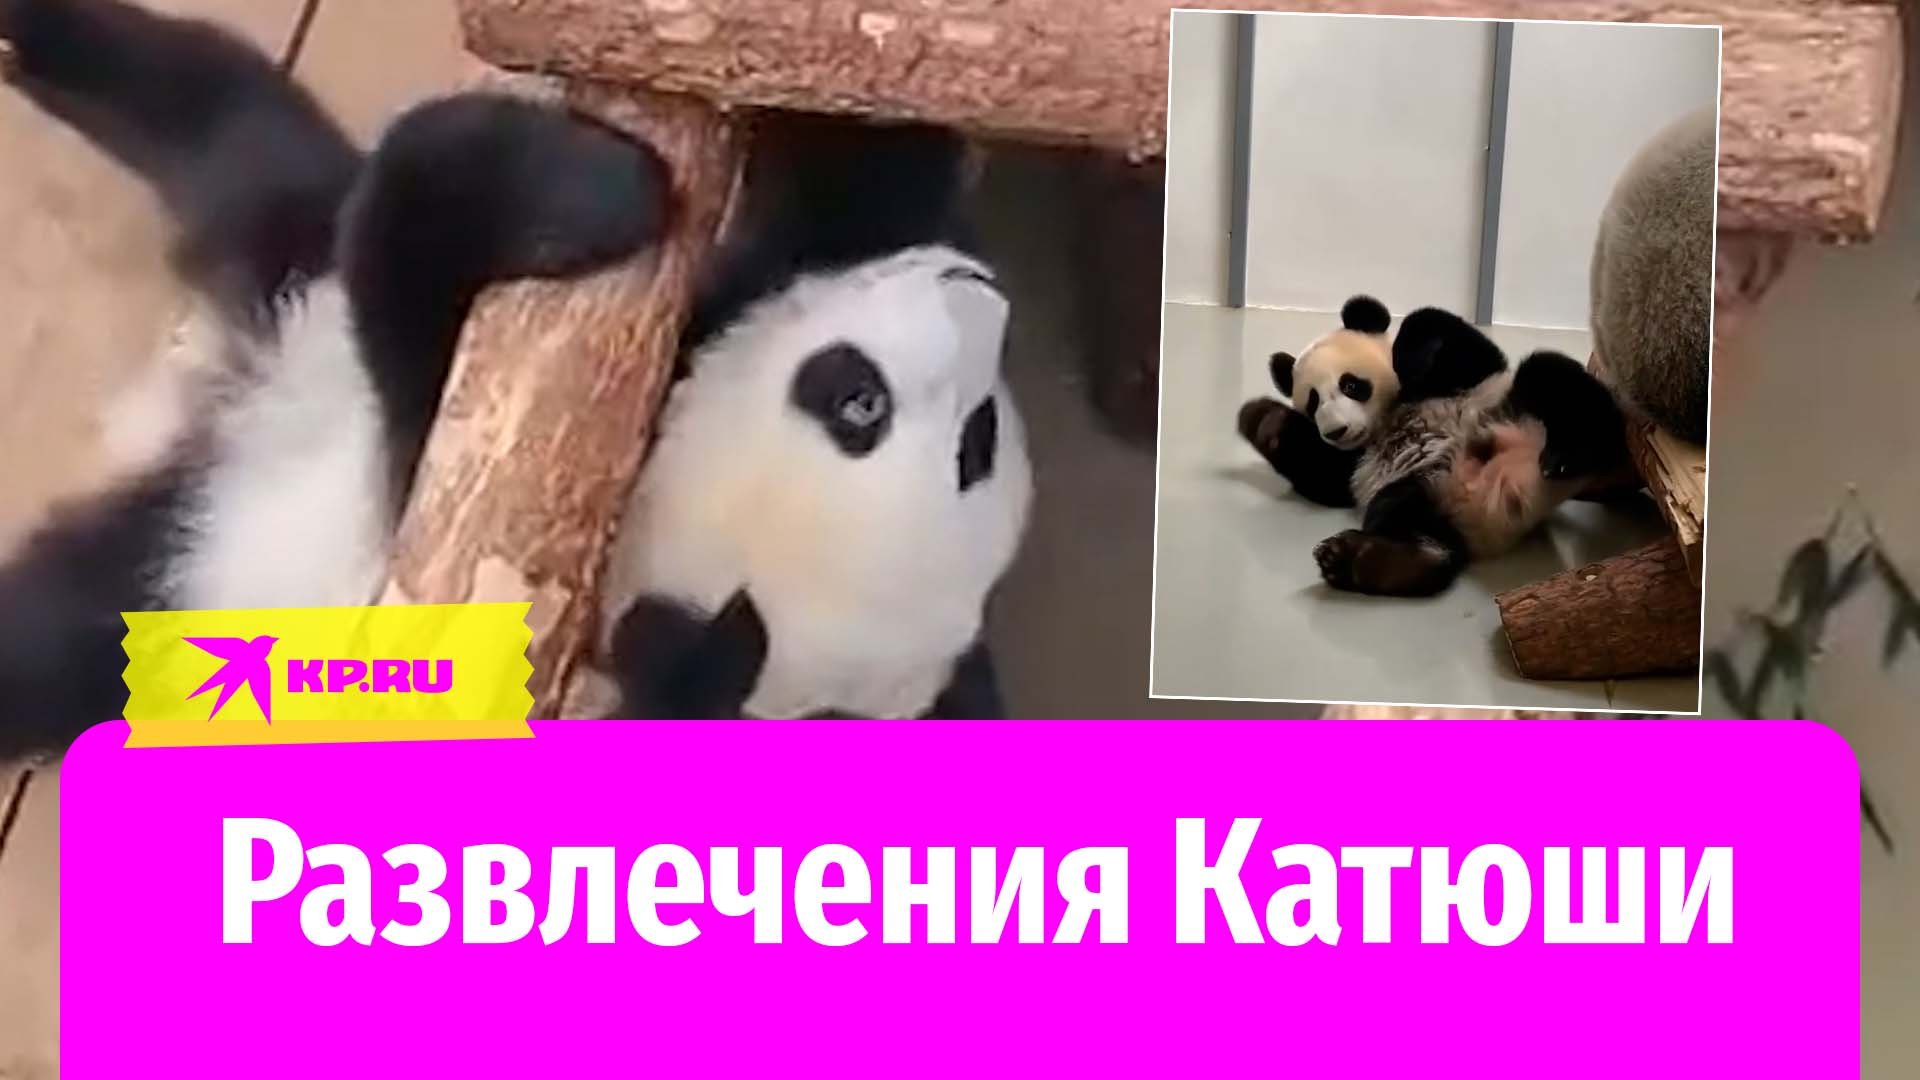 Панда Катюша из московского зоопарка развлекается